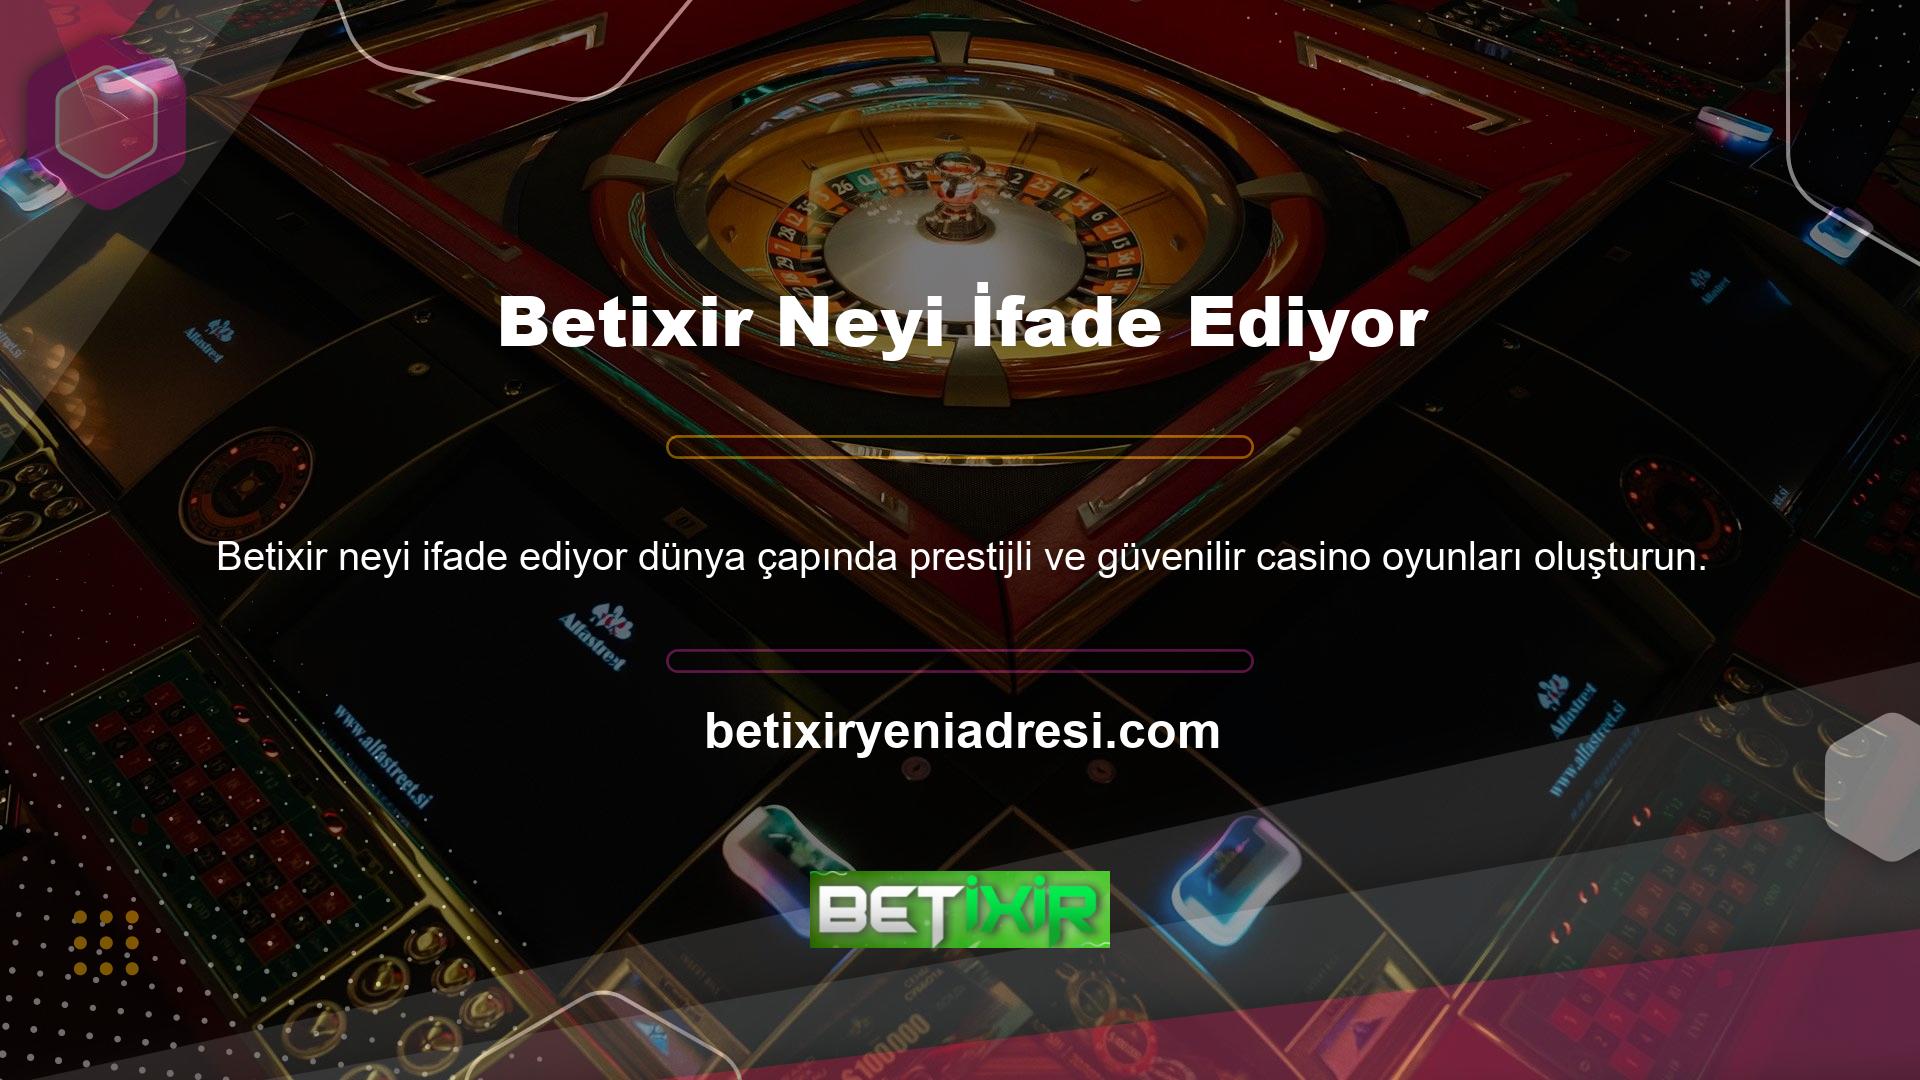 Betixir web sitesi, müşterilerin ilgisini çeken tutarlı simgeler ve renklerle karakterize edilir